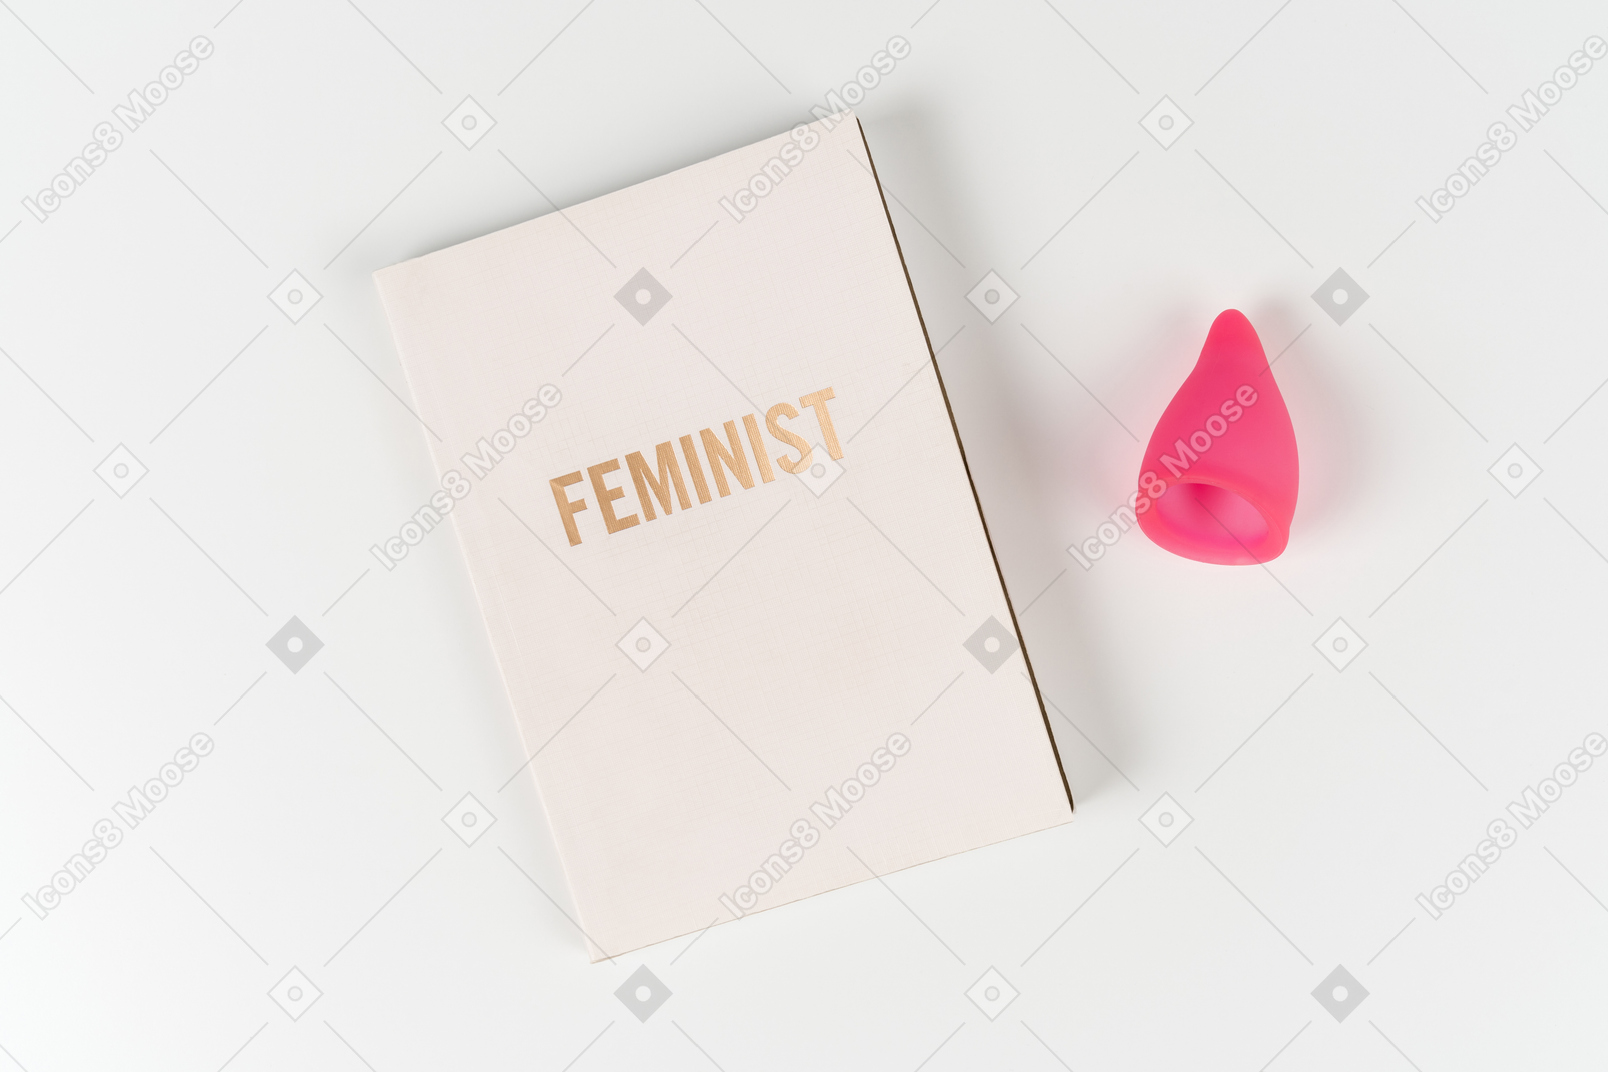 Livre féministe et coupe menstruelle sur fond blanc